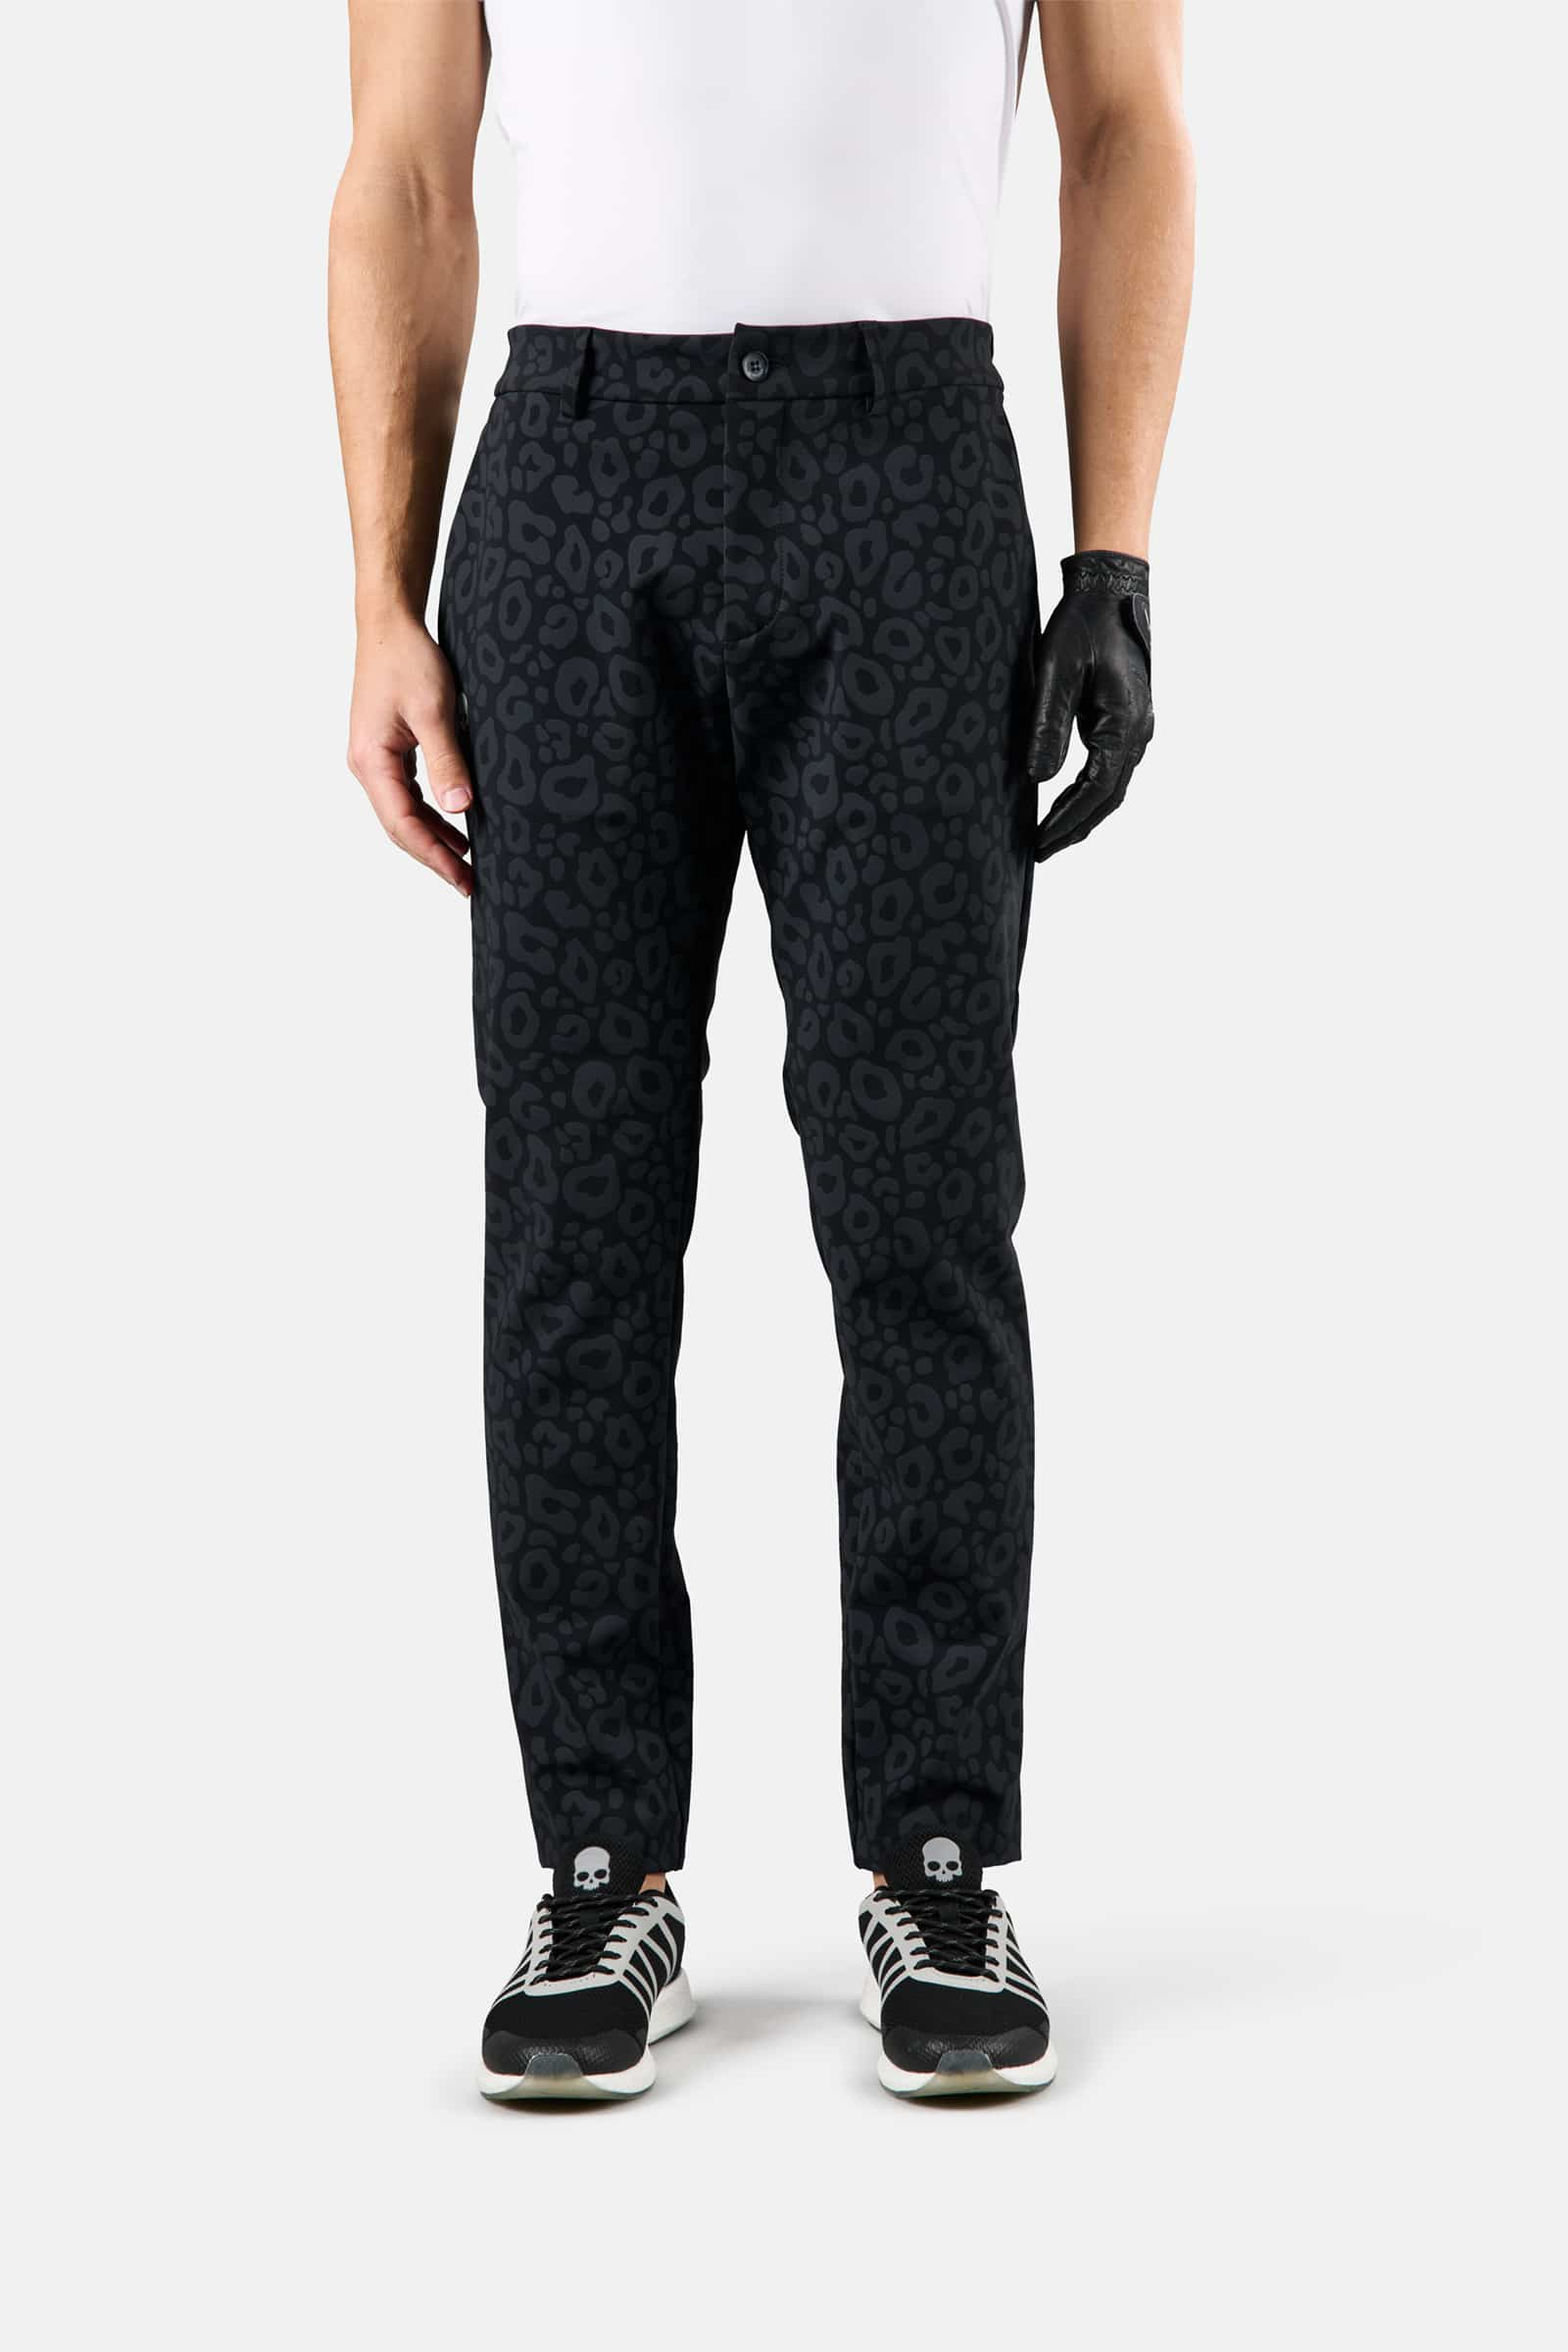 Pantaloni invernali da golf - Abbigliamento - Abbigliamento sportivo | Hydrogen